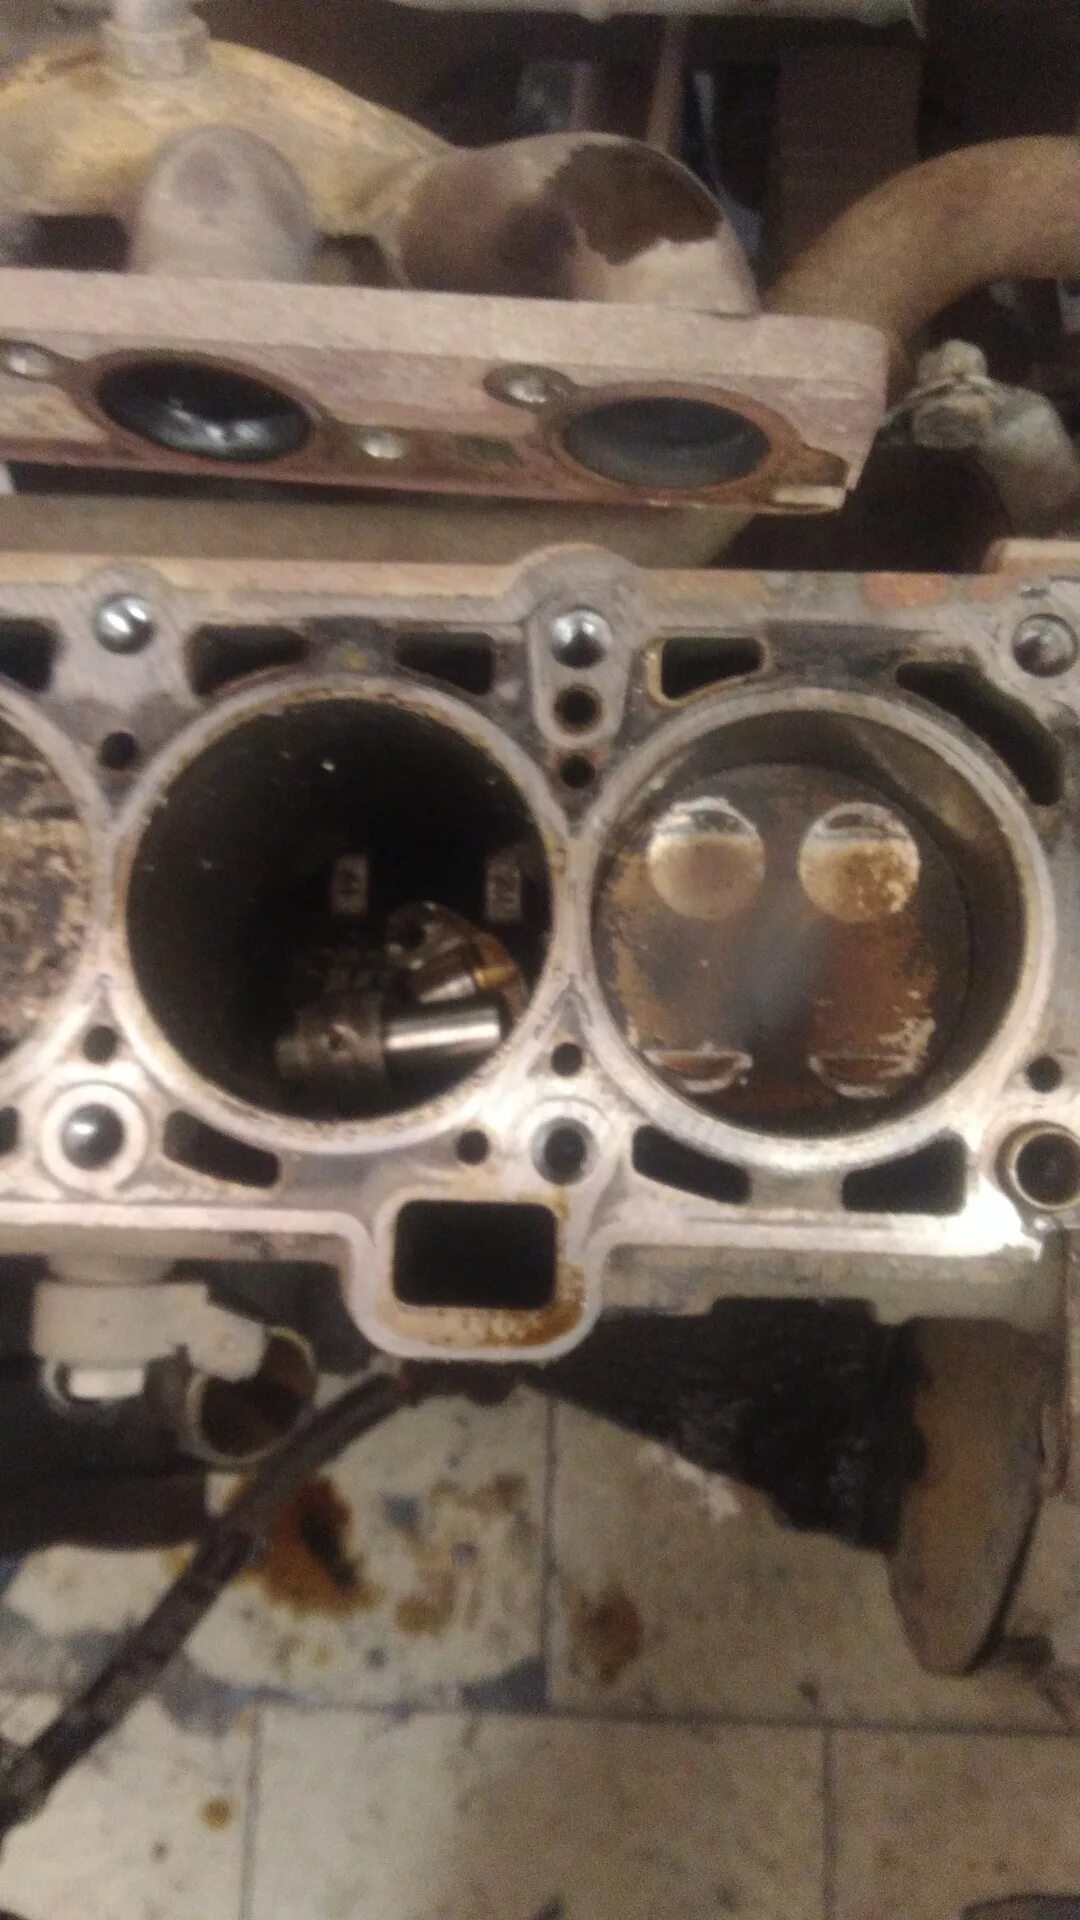 Двигатель Гранта 8 клапанов 11186 гнет ли клапана. Погнуло клапана Гранта 8 клапанная. Загнуло клапана Приора 16 клапанов. Погнуло клапана Гранта 8 клап. Двигатель весты гнет клапана